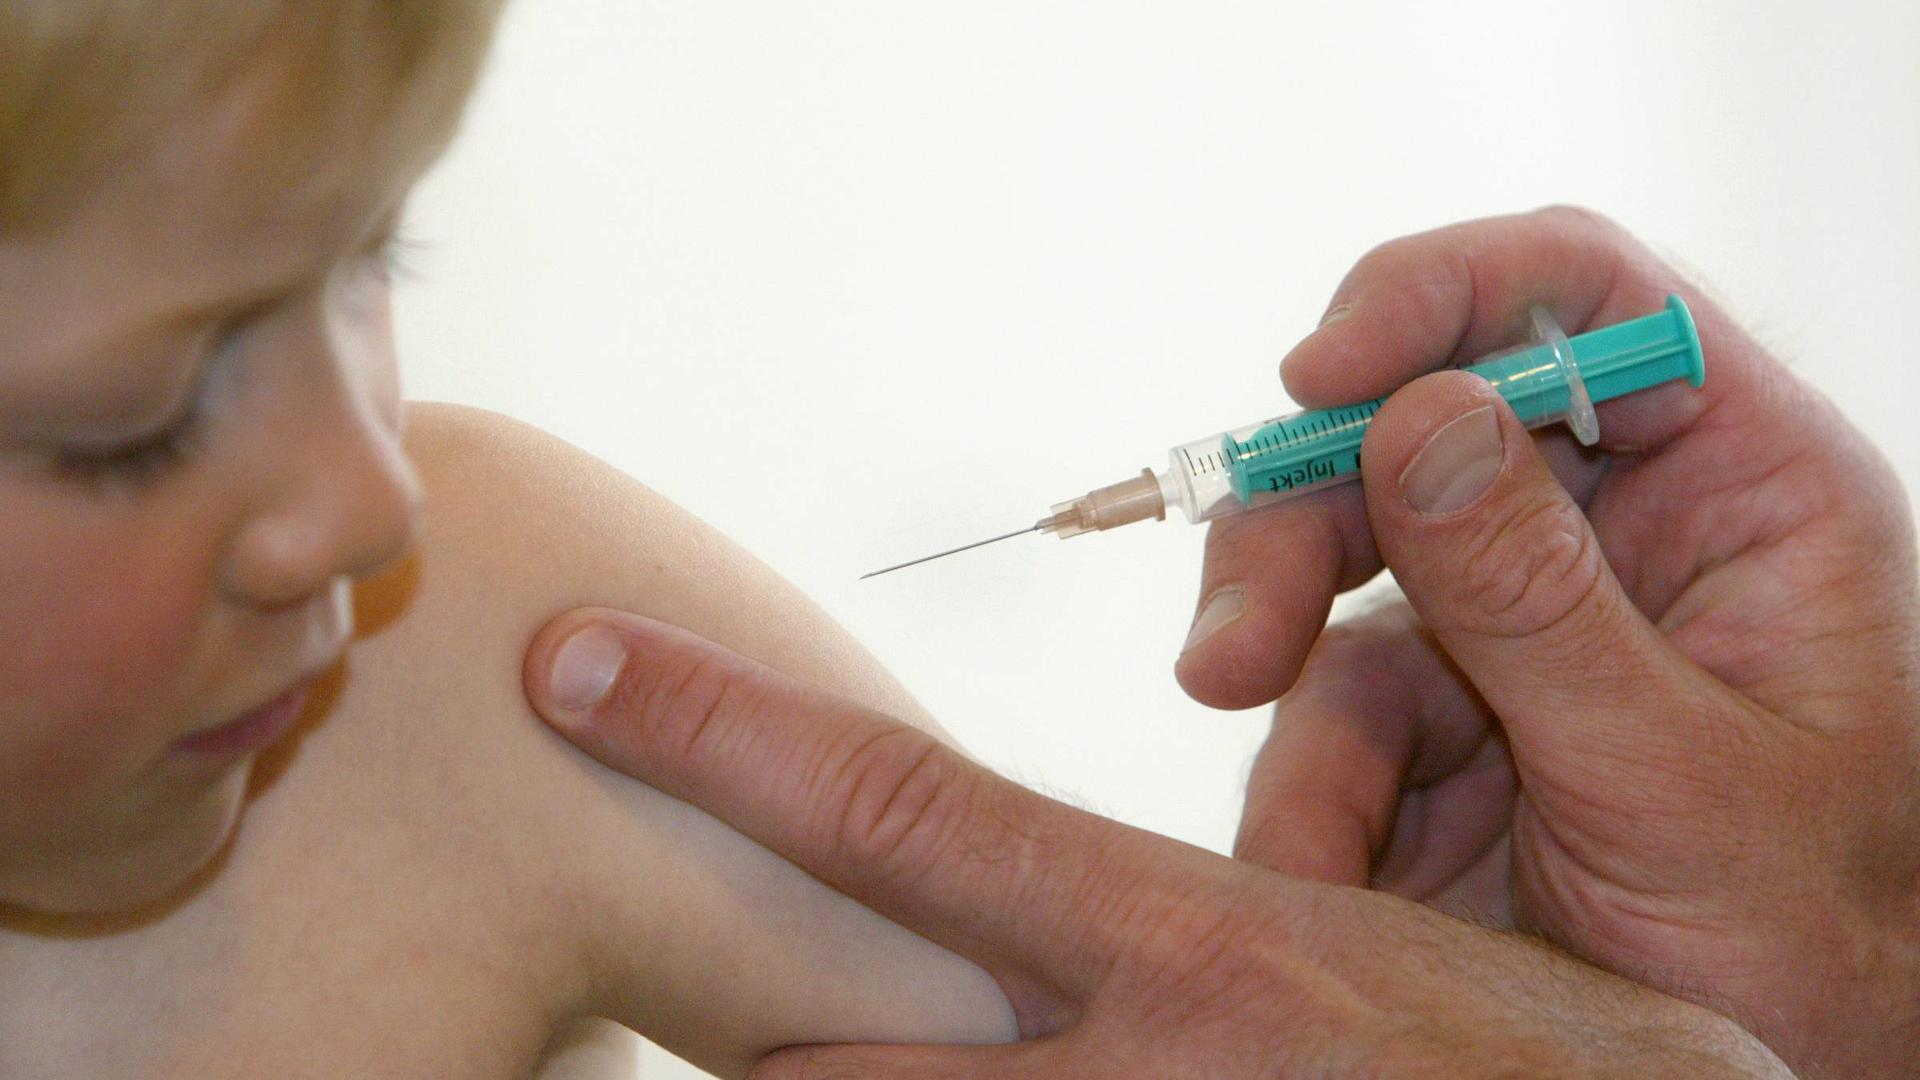 Kinder ab fünf Jahren sollen von dem Biontech/Pfizer-Impfstoff nur ein Drittel der Erwachsenen-Dosis erhalten und zwei Dosen im Abstand von drei Wochen. 